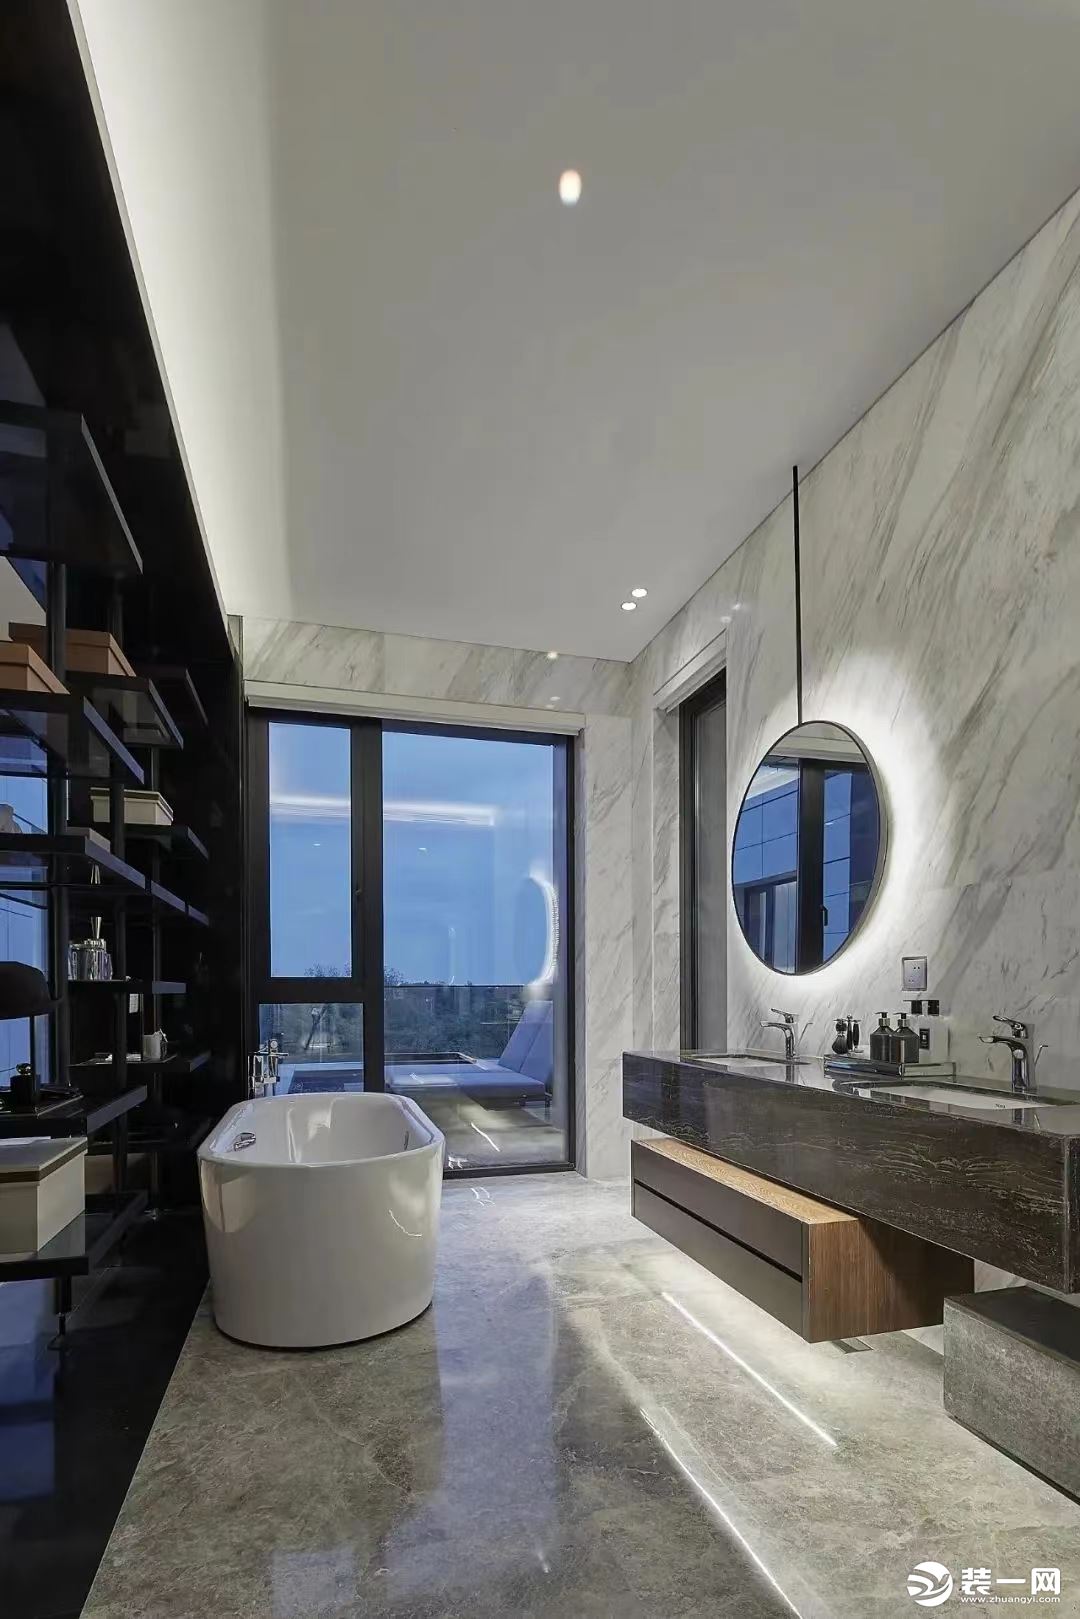 浴缸正对镂空式的展示柜，沐浴时能够尽情观赏窗外的美景，也可以在外侧的小阳台点一盏烛光尽享情调。